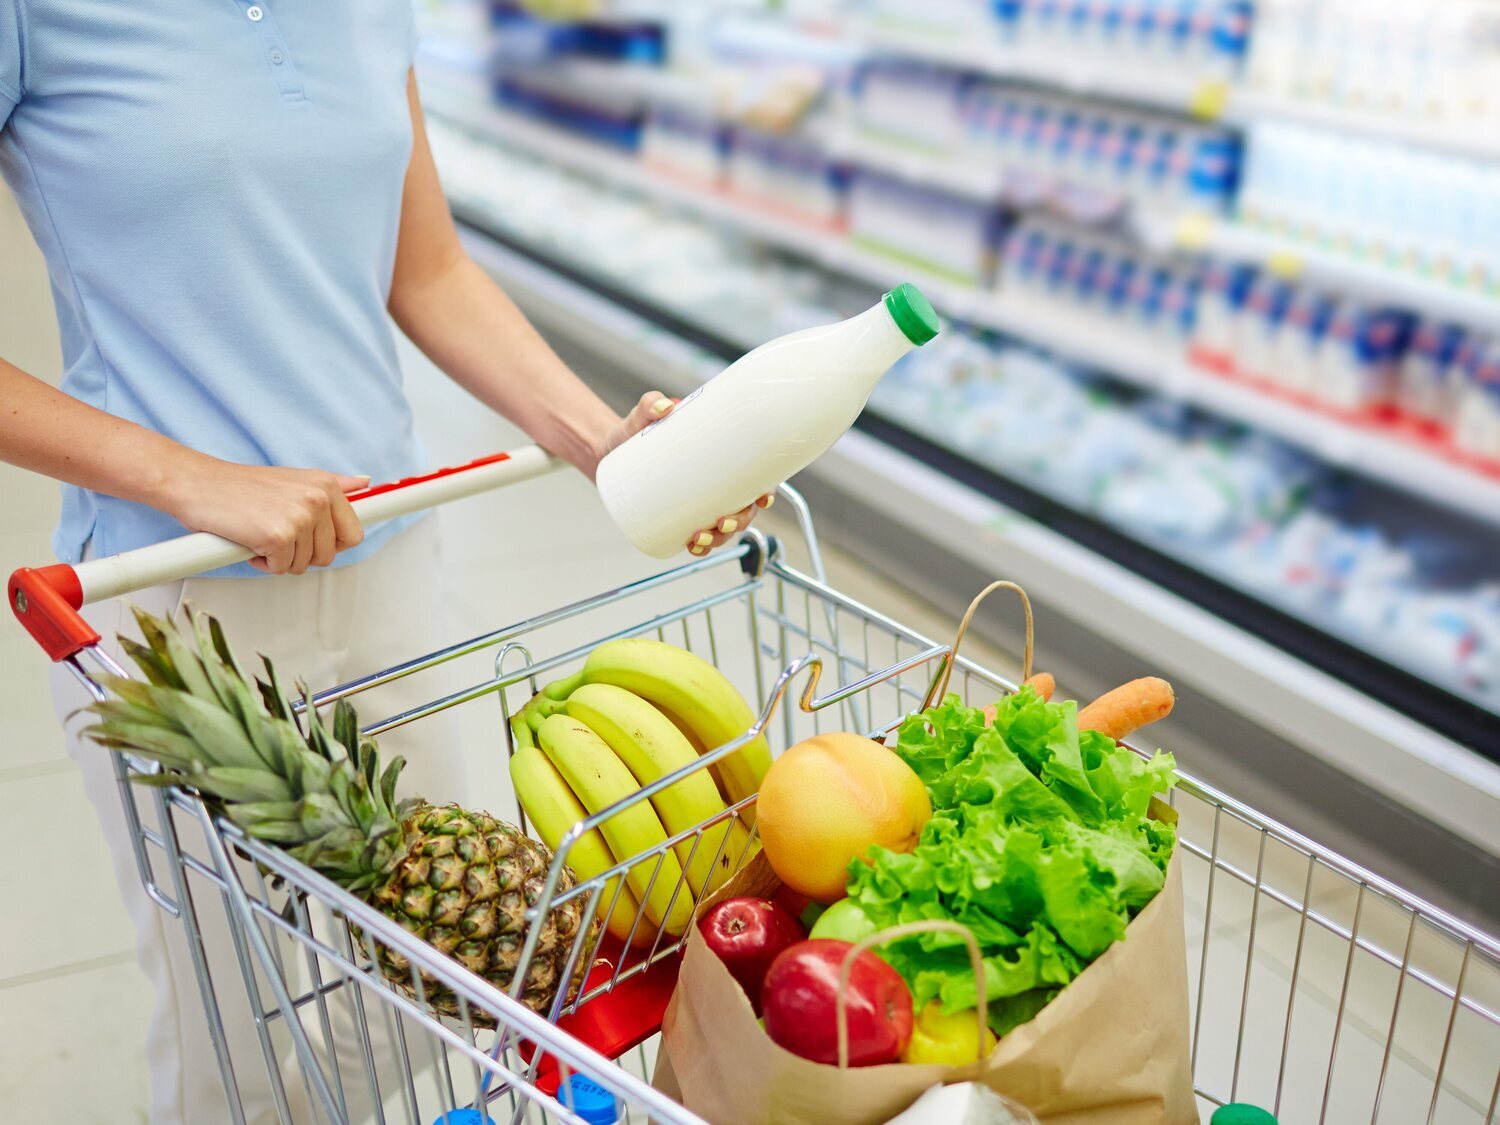 El sistema suizo que llevaría "a la quiebra" a los supermercados españoles